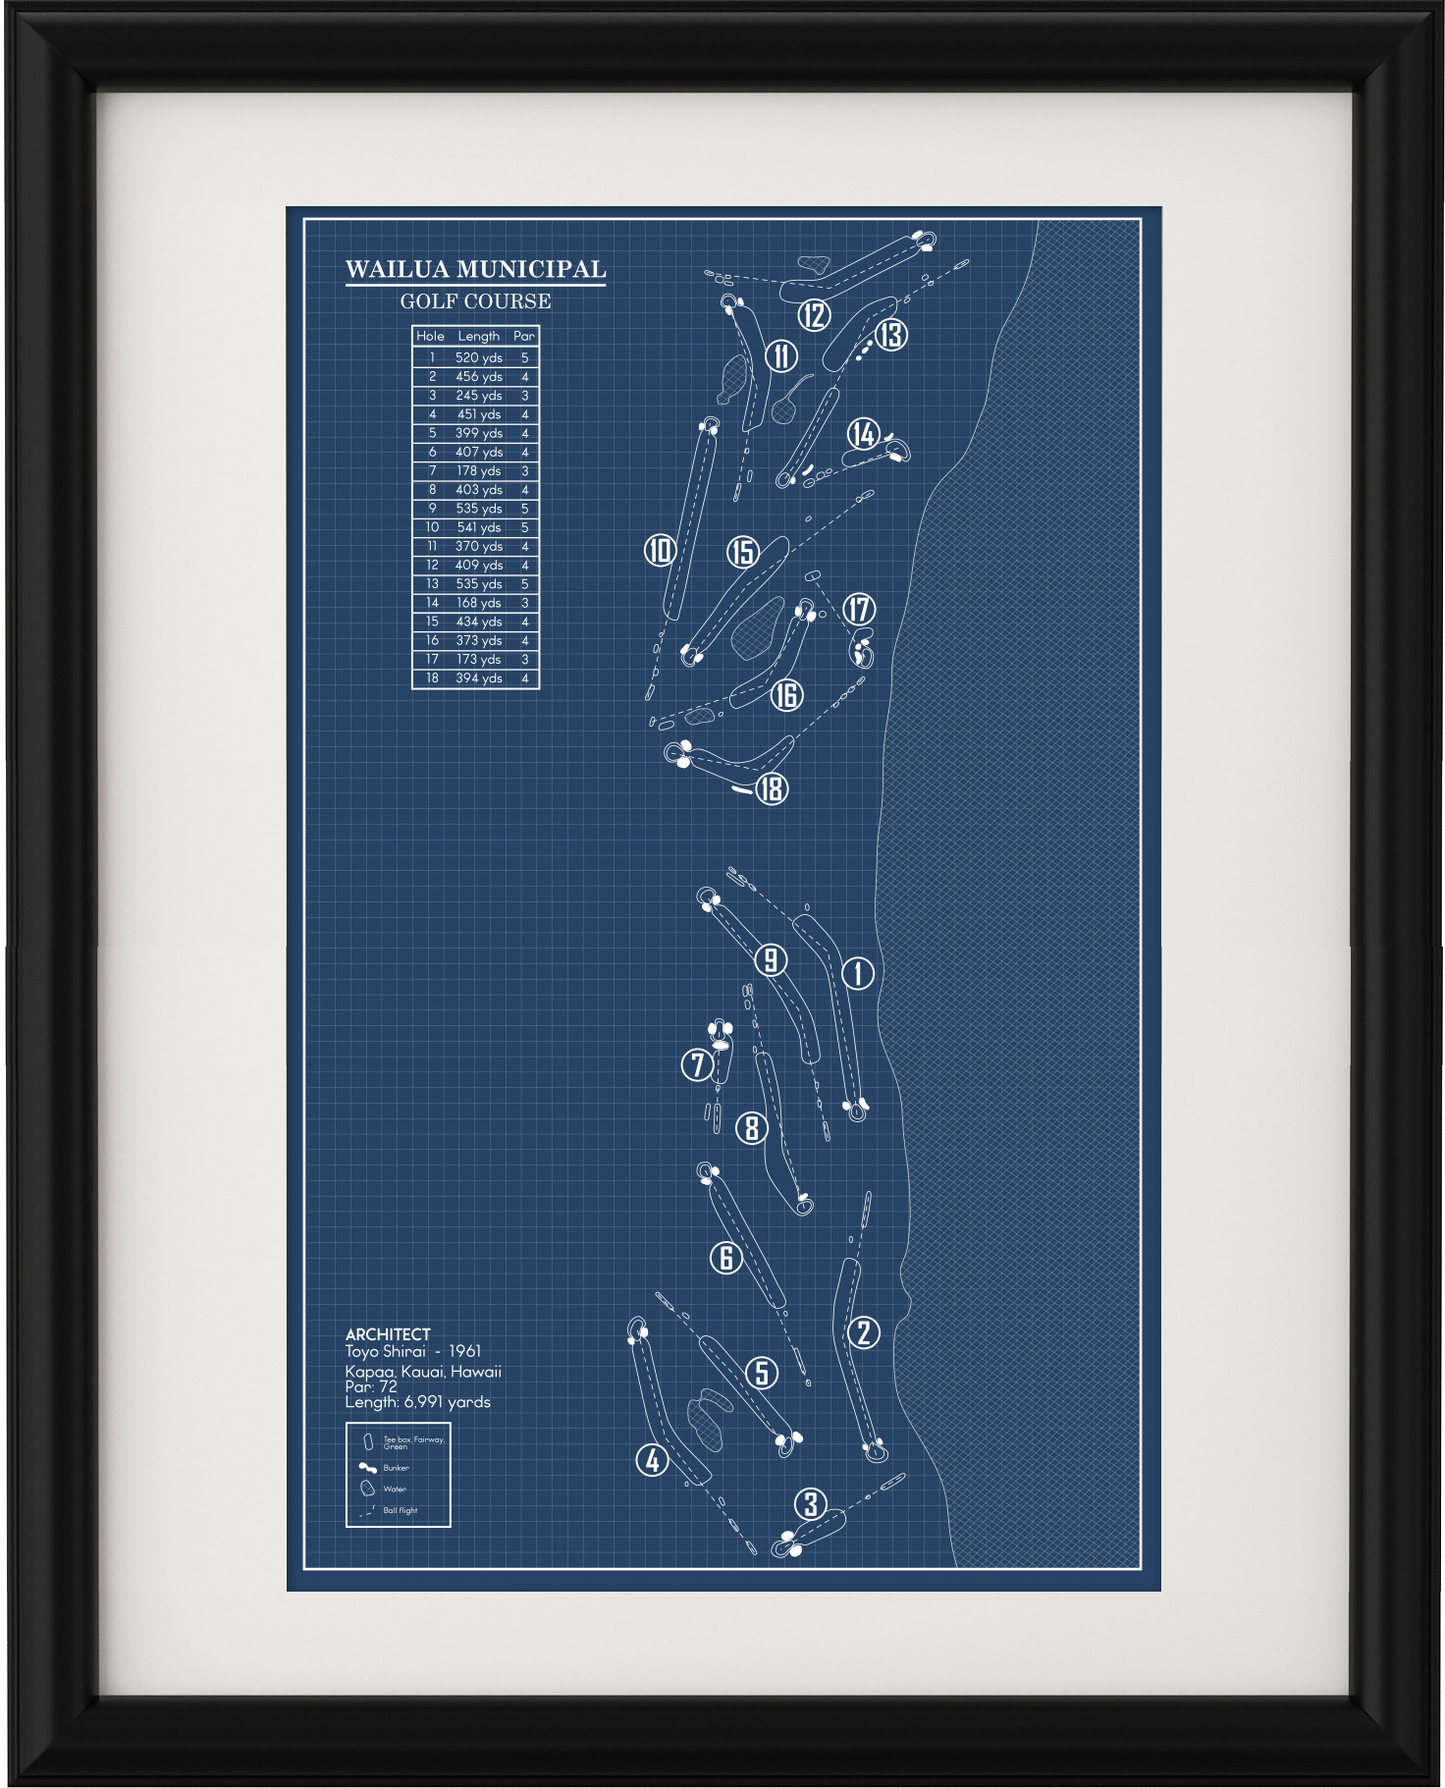 Wailua Municipal Golf Course Blueprint (Print)